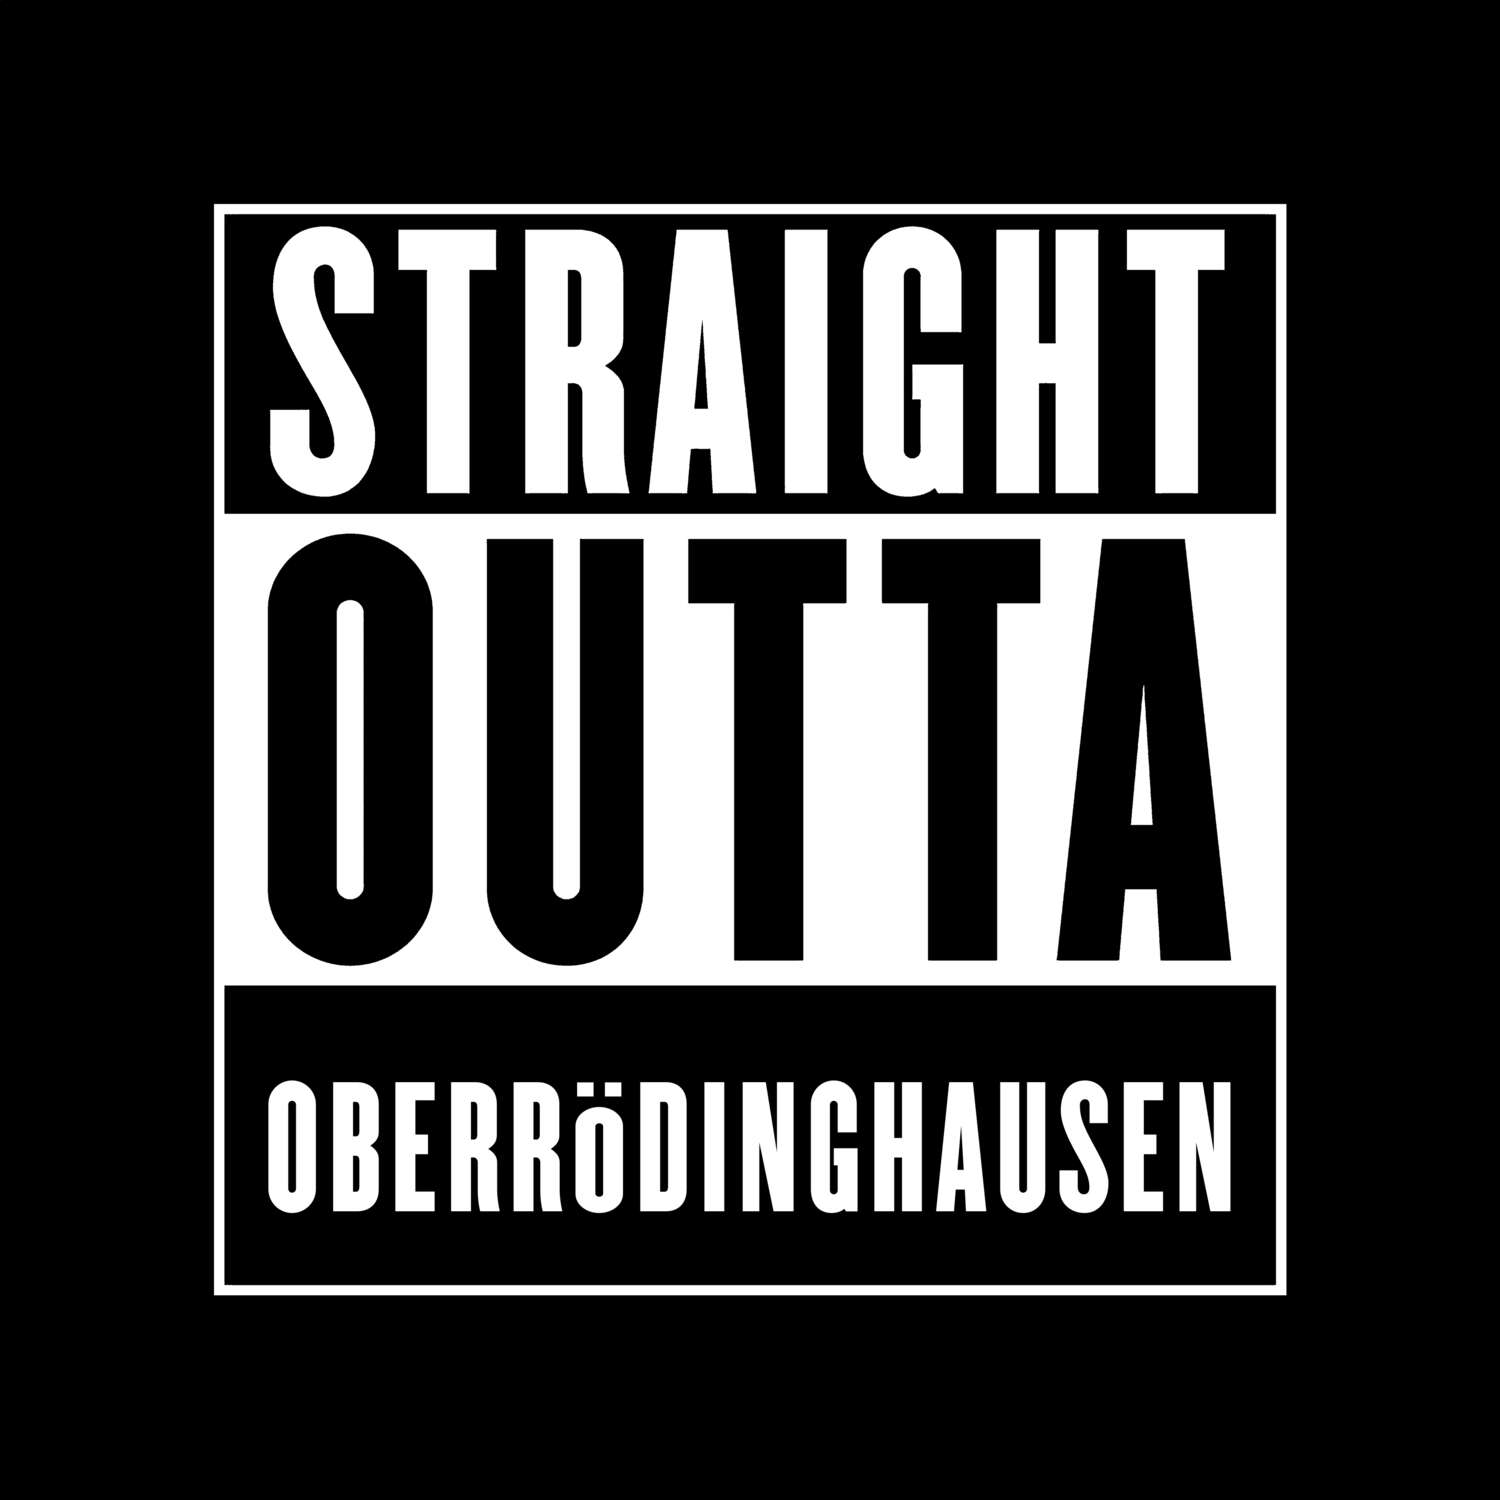 Oberrödinghausen T-Shirt »Straight Outta«